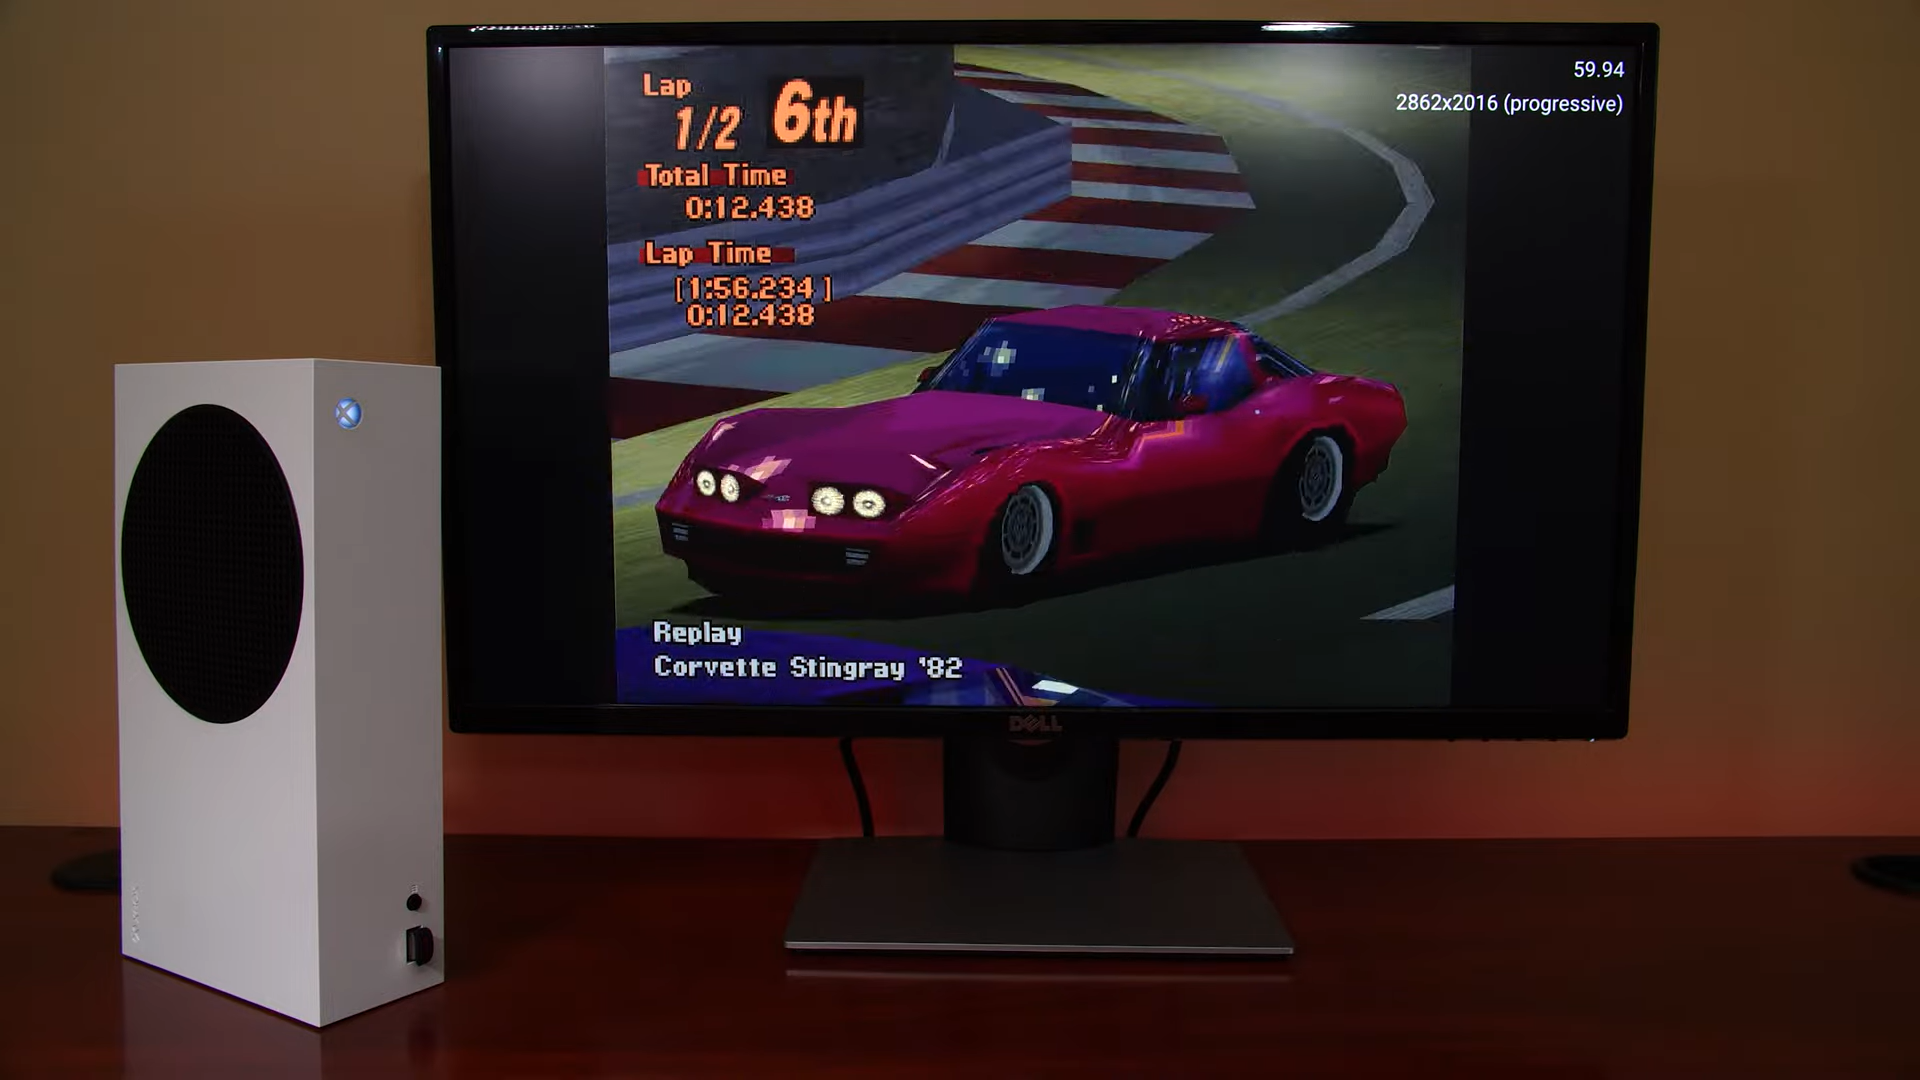 Chuyện lạ: Máy Xbox chơi được game… PlayStation ở độ phân giải 4K, 60fps